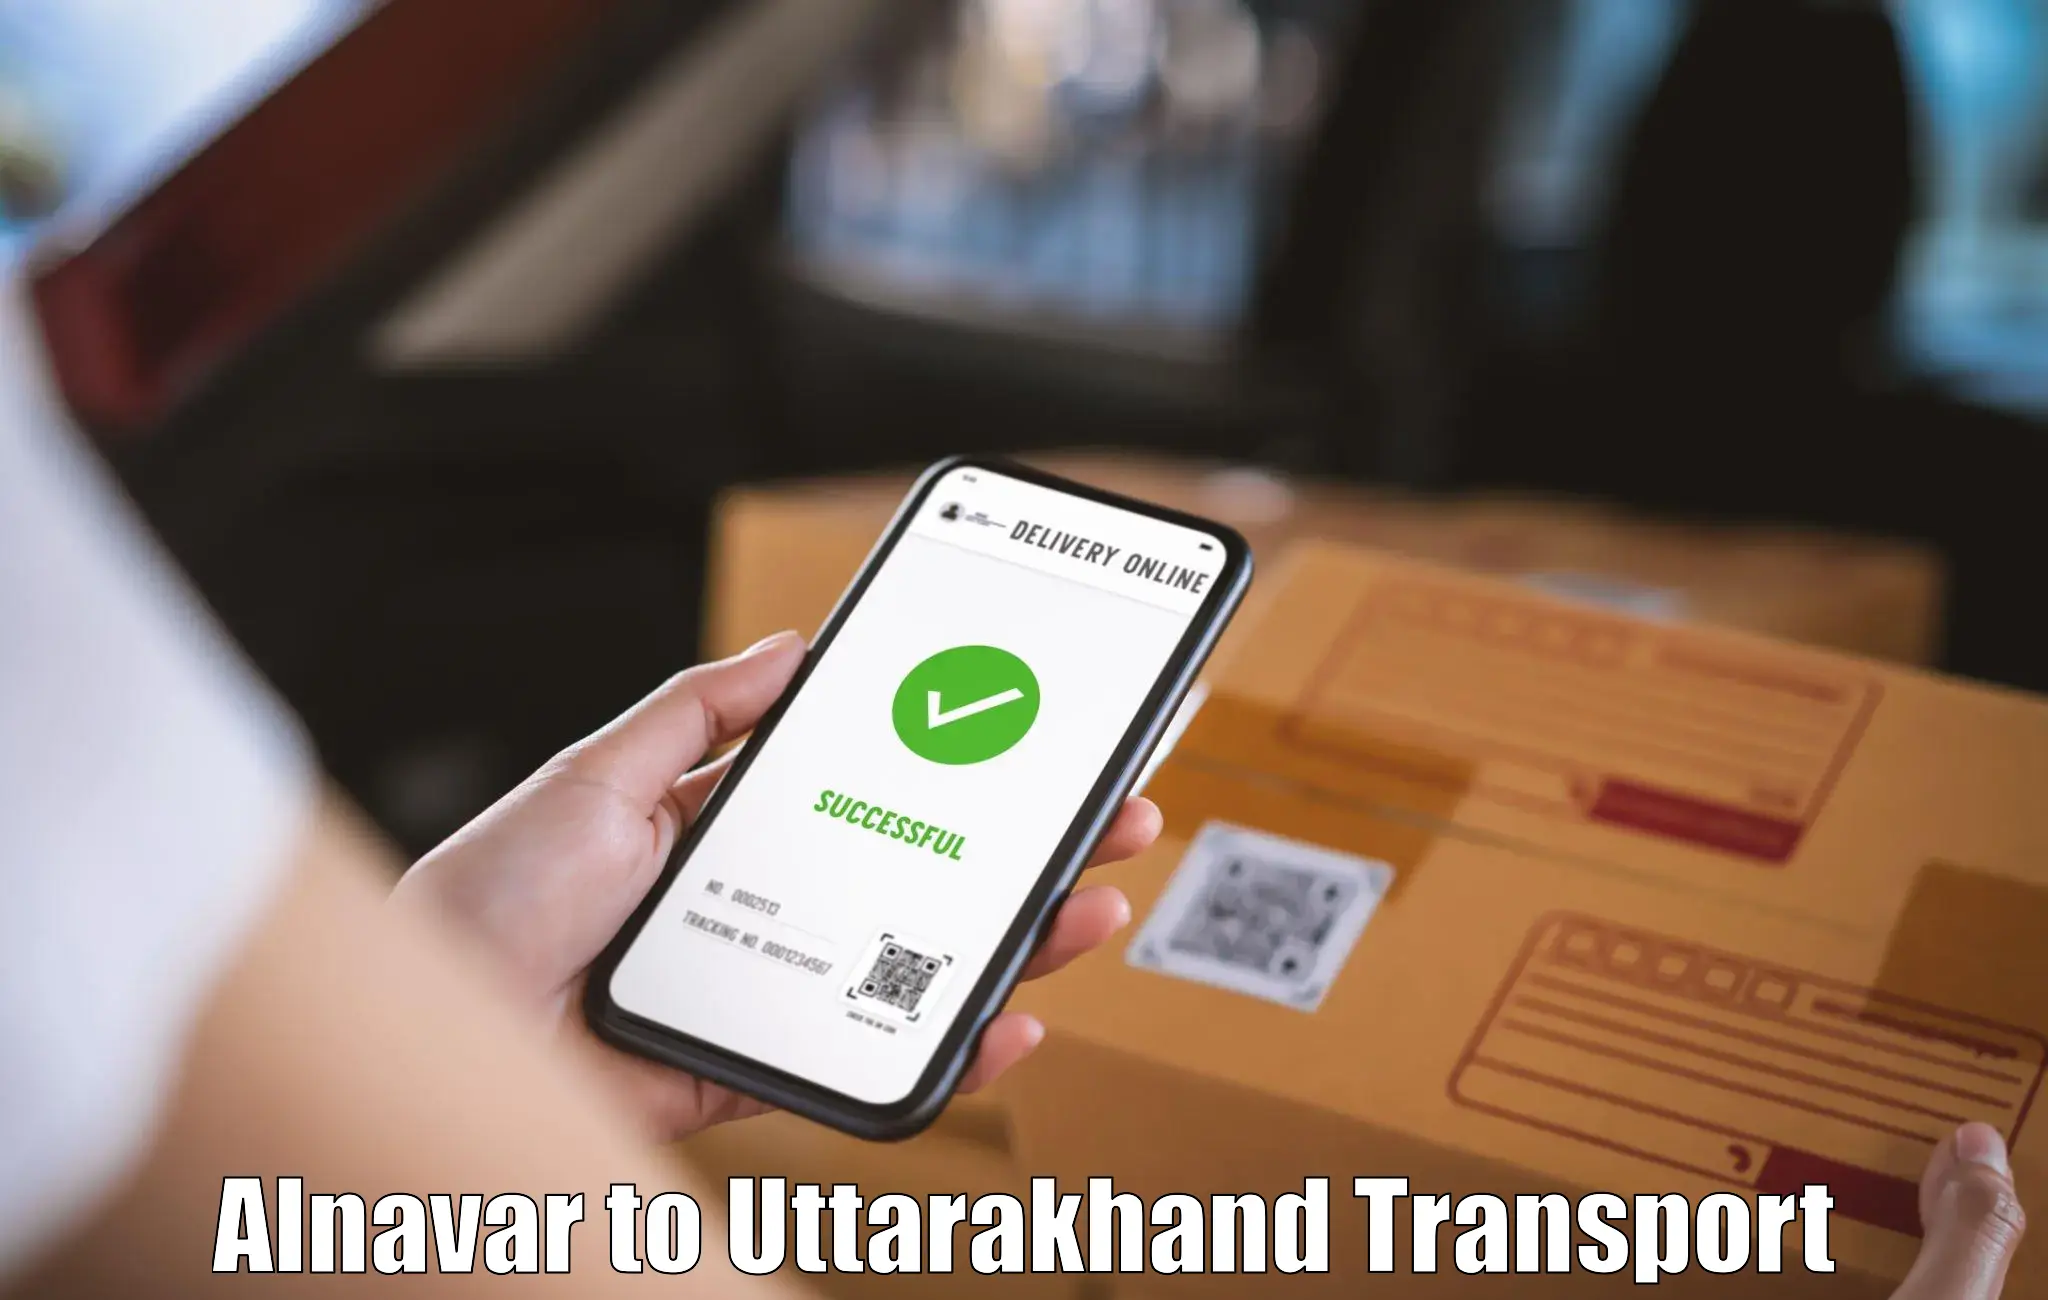 India truck logistics services Alnavar to Rudrapur